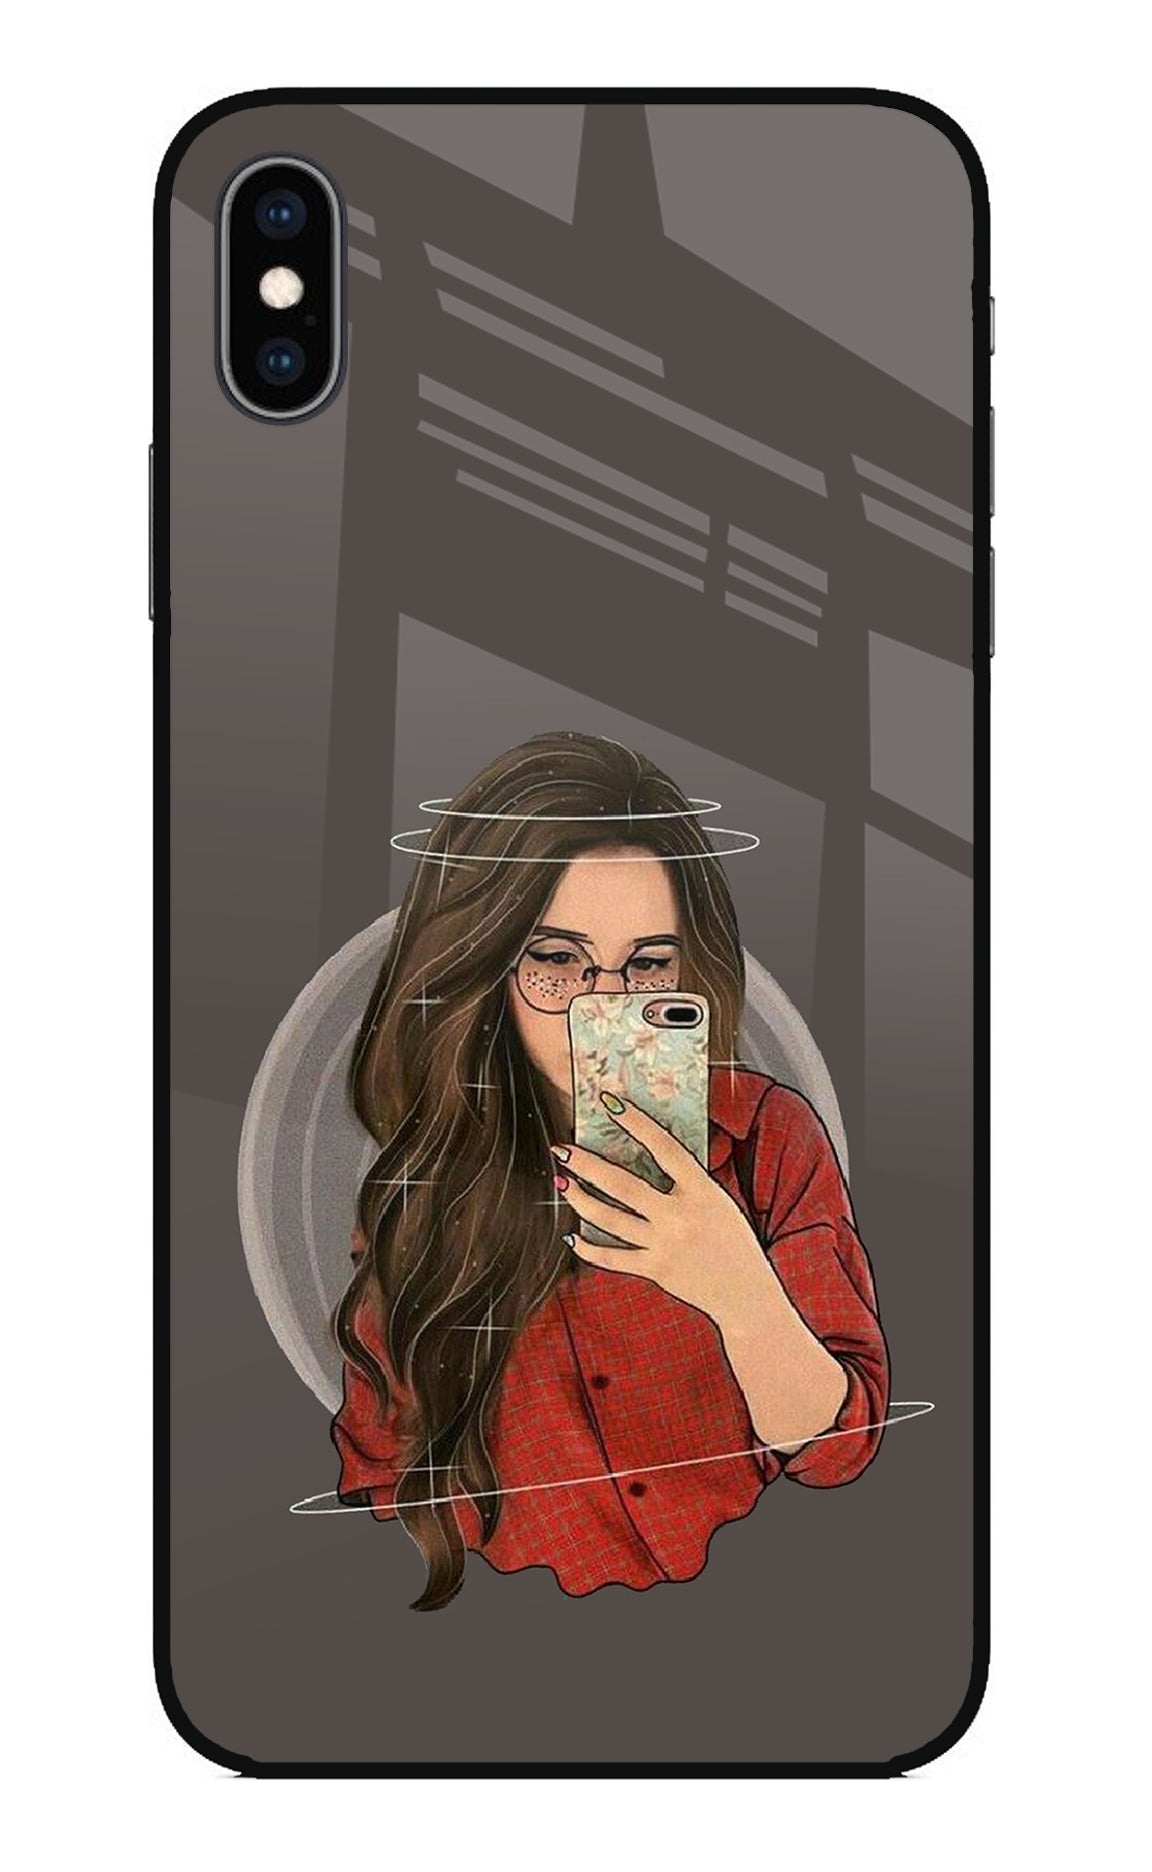 Selfie Queen iPhone XS Max Glass Case